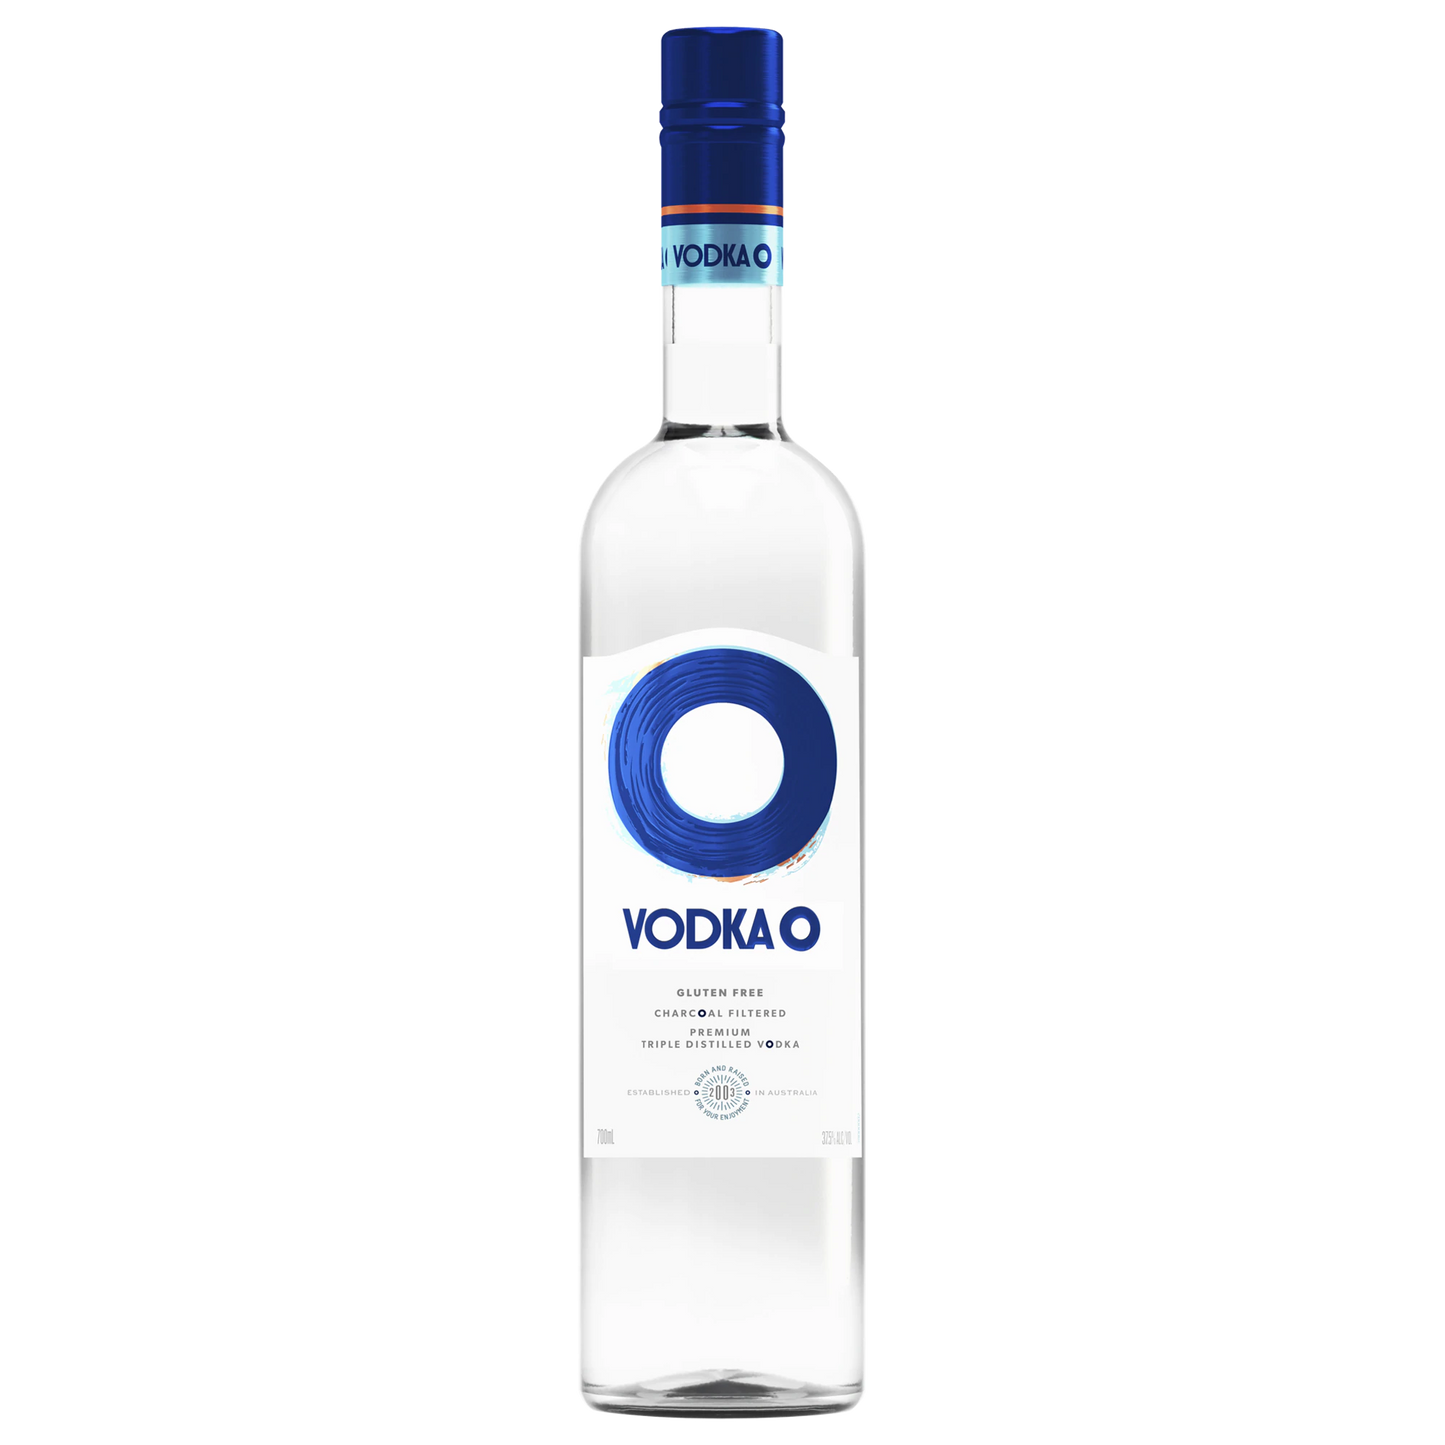 Vodka O Vodka 700ml